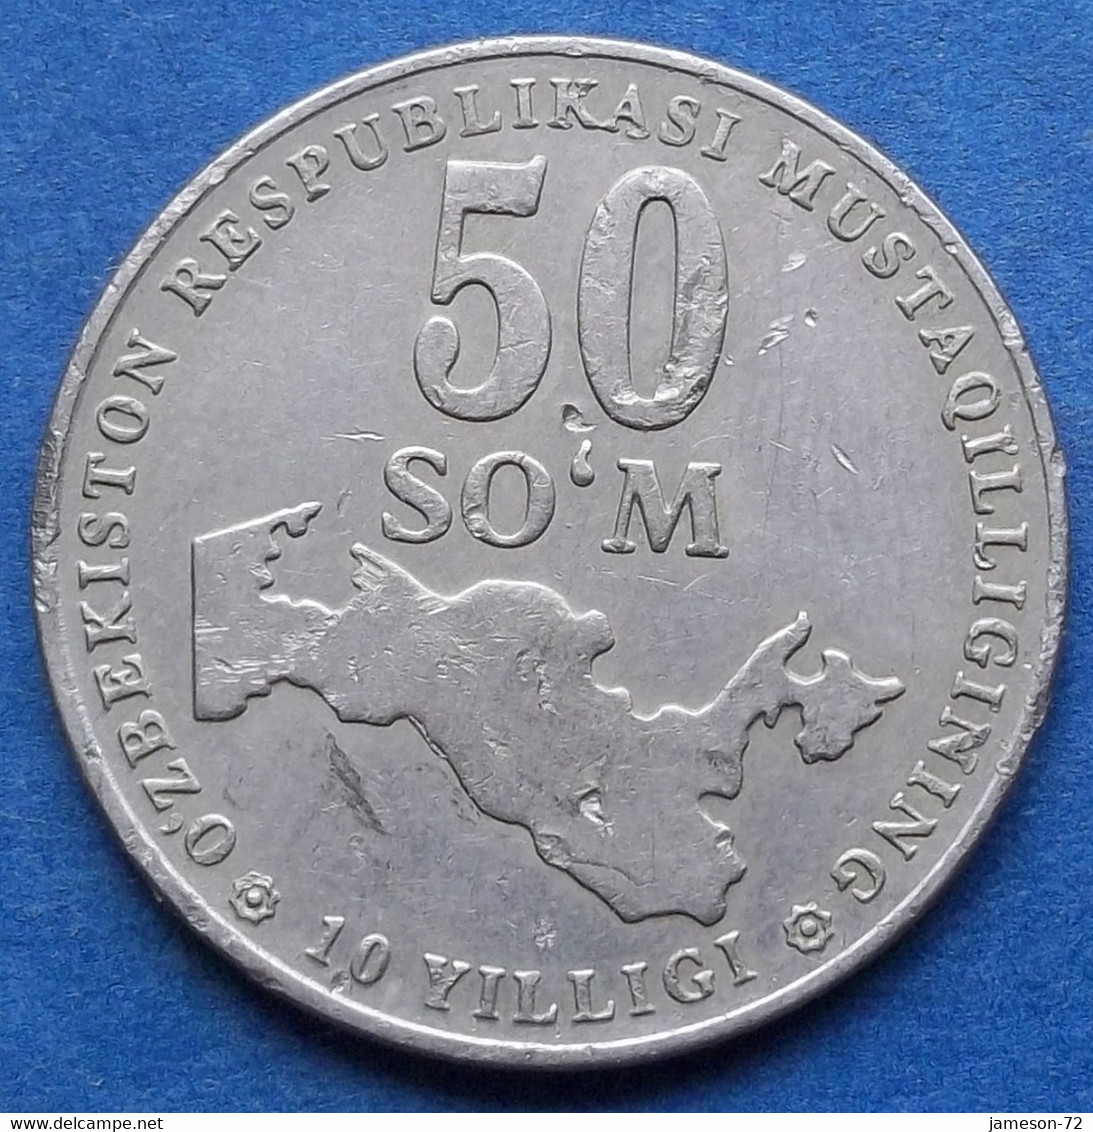 UZBEKISTAN - 50 So'm 2001 KM# 15 Independent Republic (1991) - Edelweiss Coins - Uzbekistan